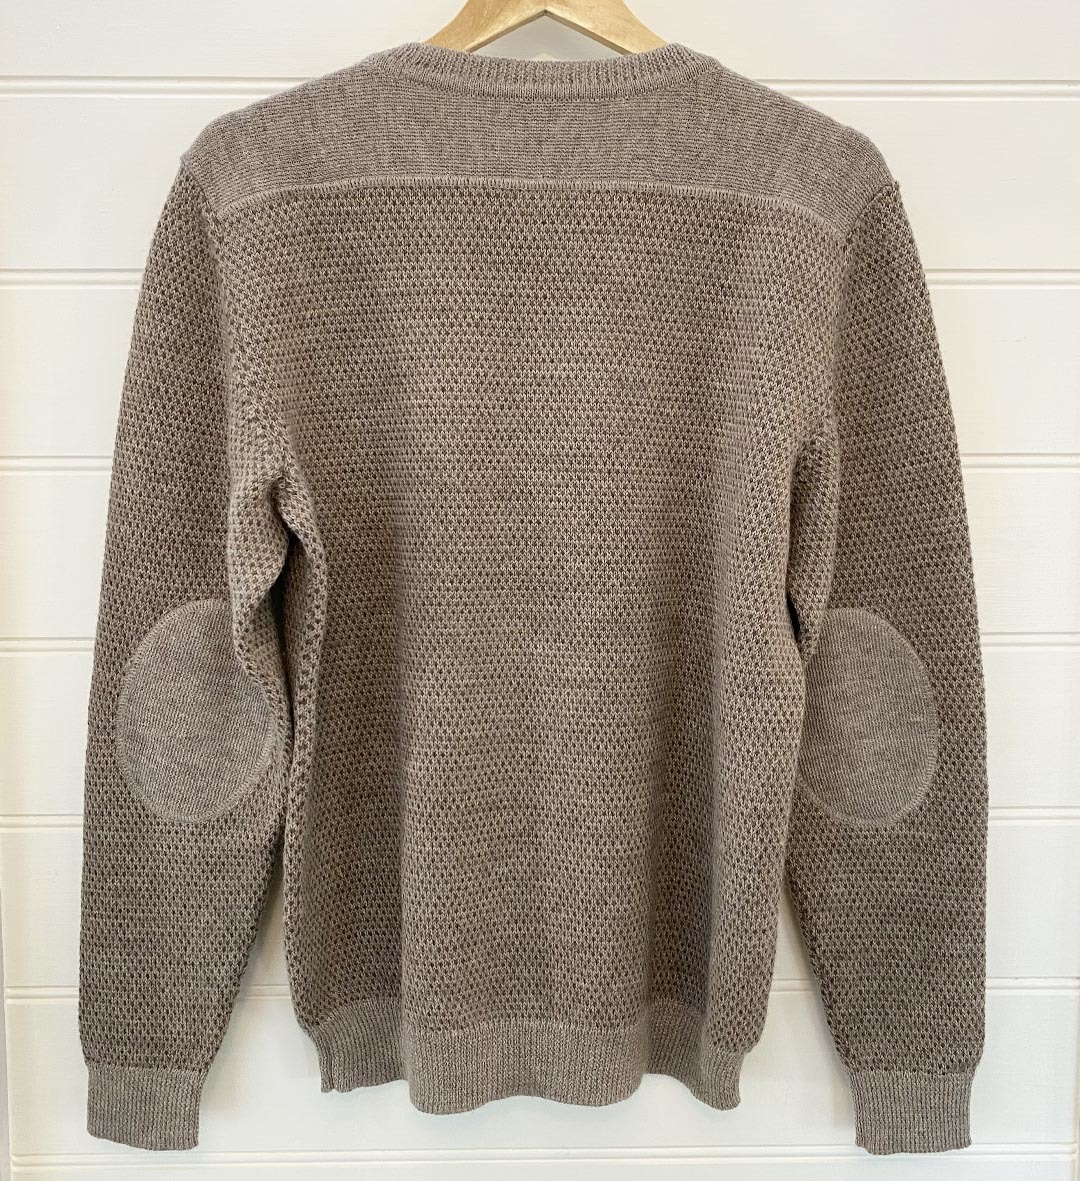 Pique Sweater - Nutmeg/Brown - 2